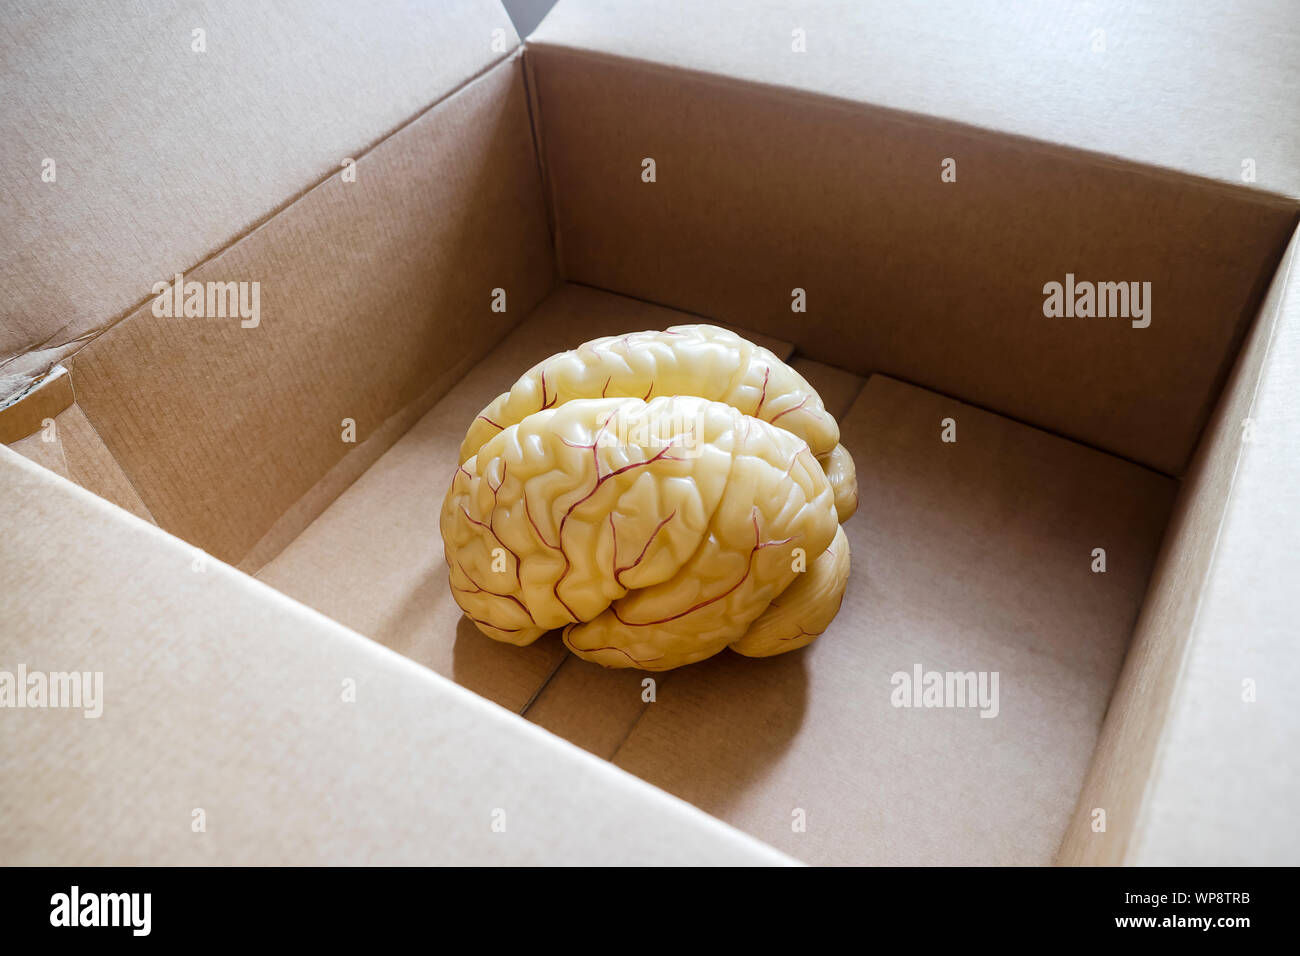 Modèle anatomique du cerveau humain dans une boîte ouverte Banque D'Images